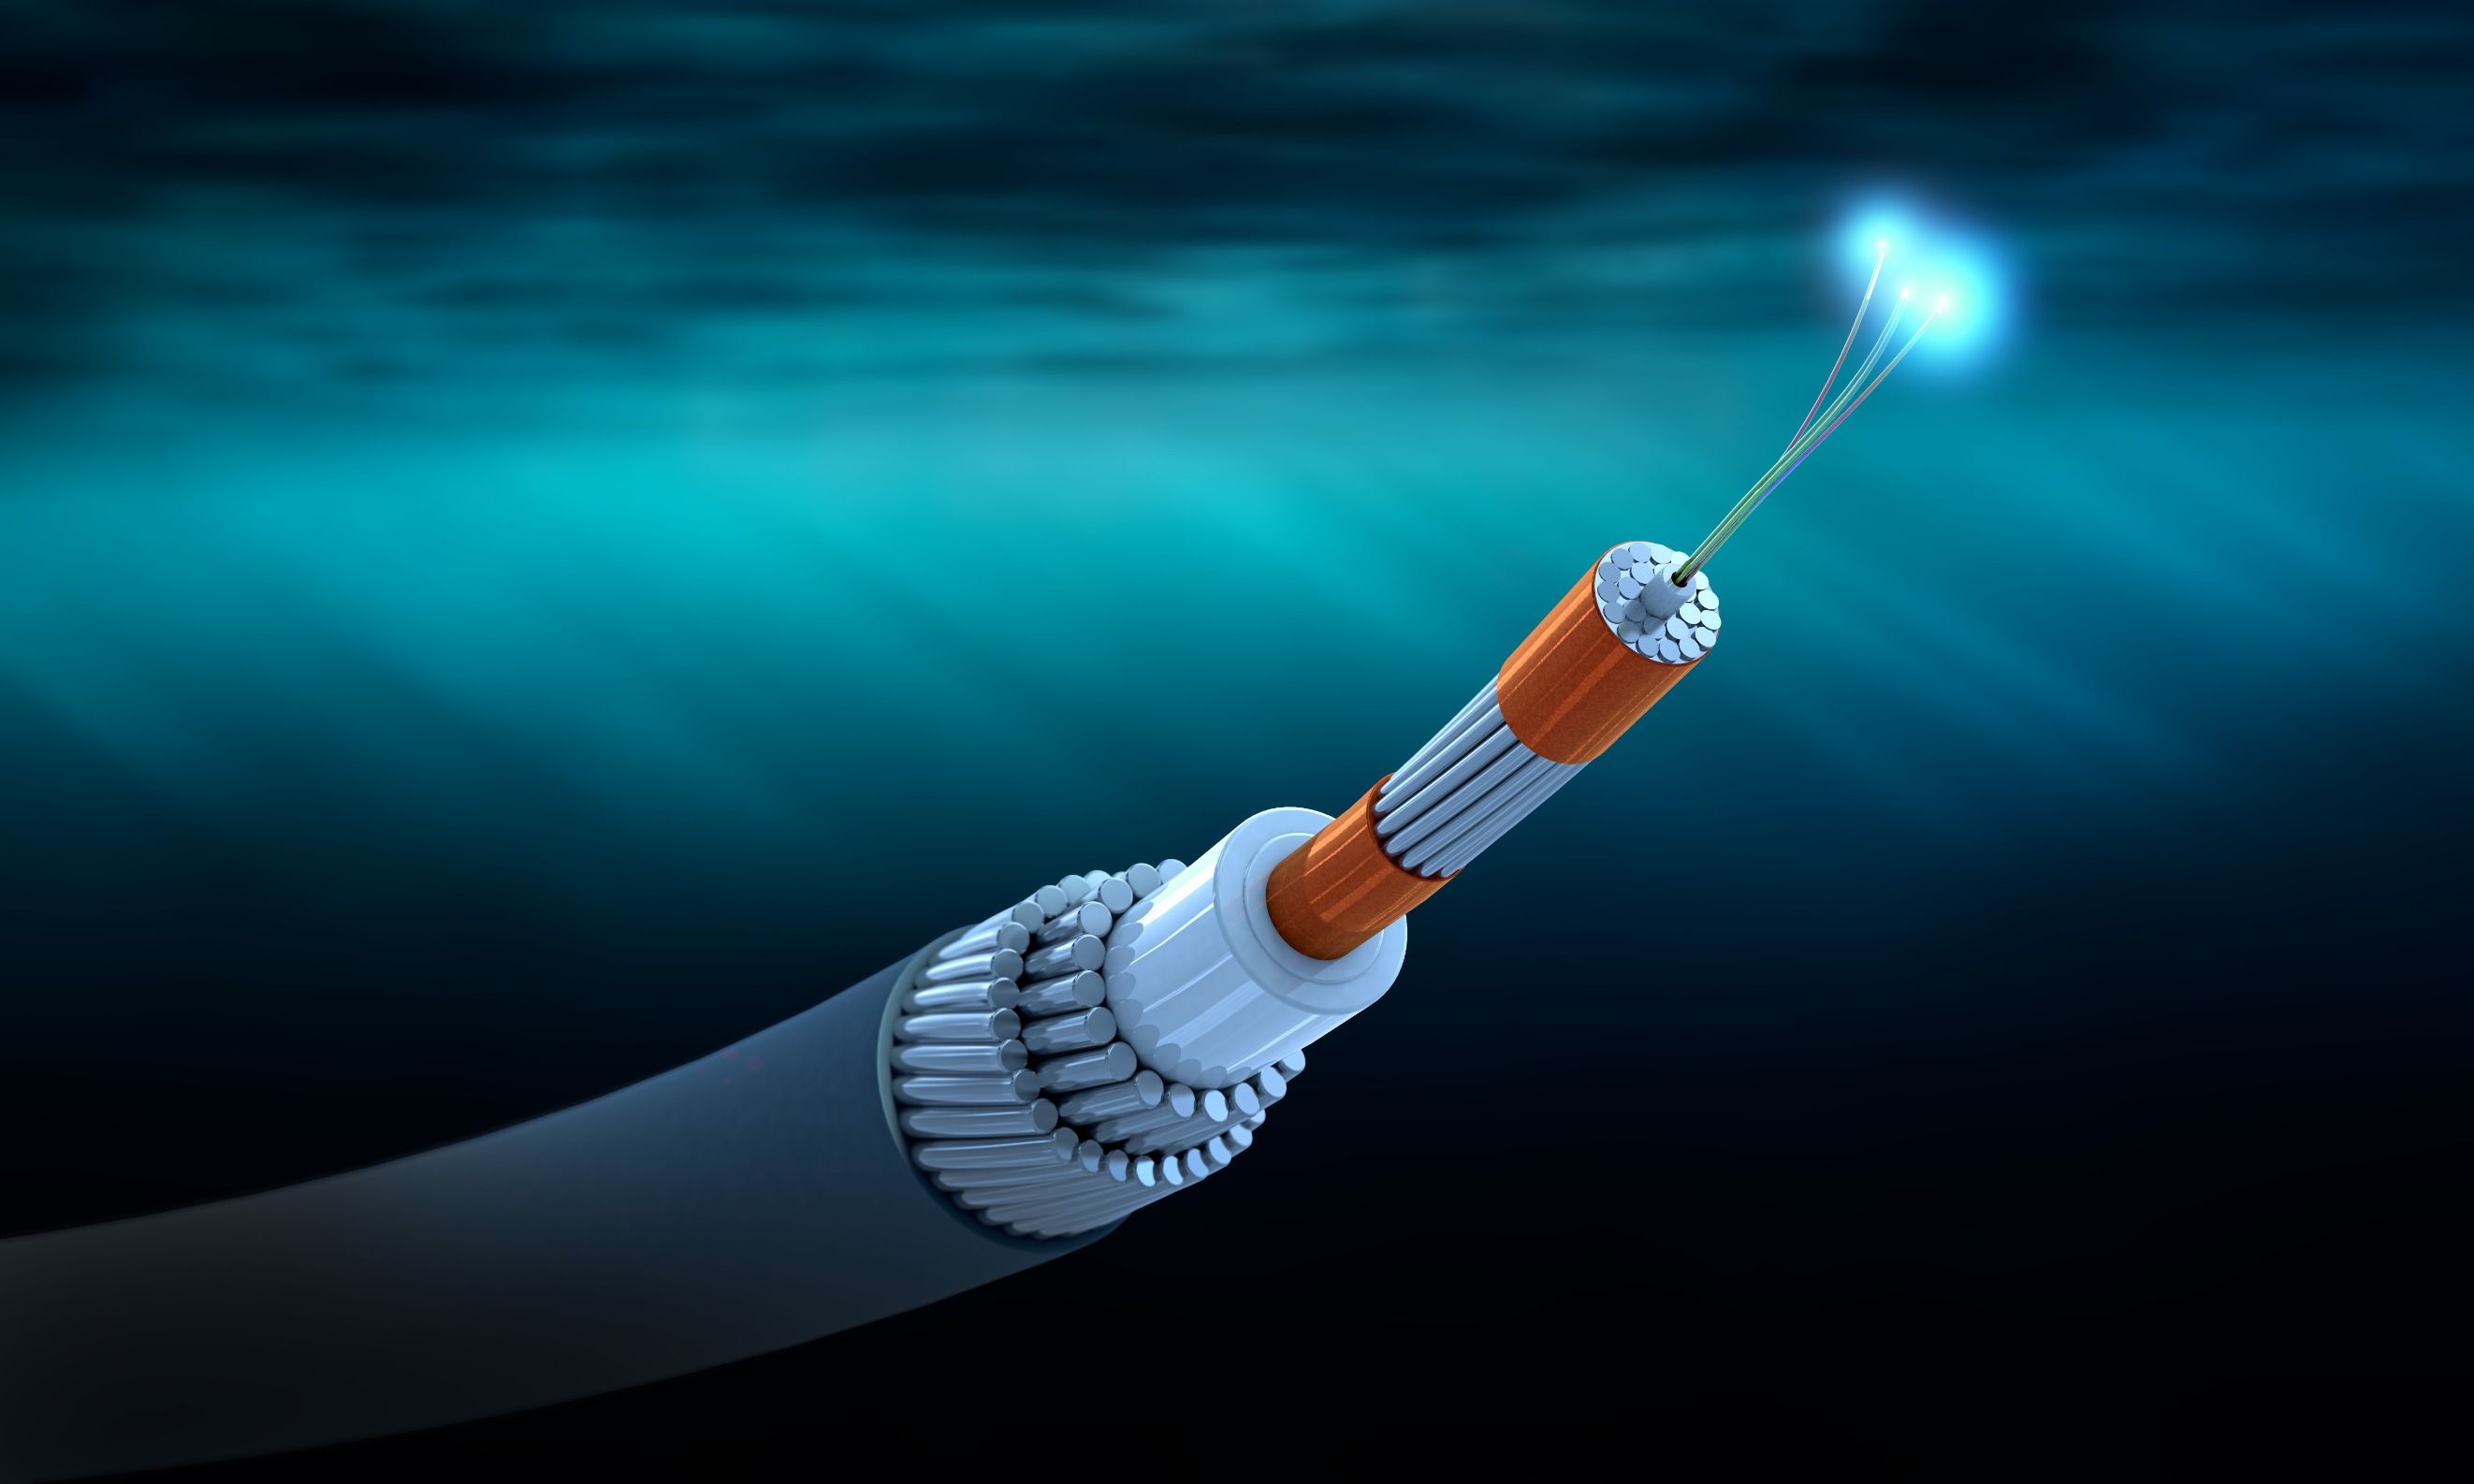  Ilustración 3d de una sección transversal de un cable de comunicaciones submarino.